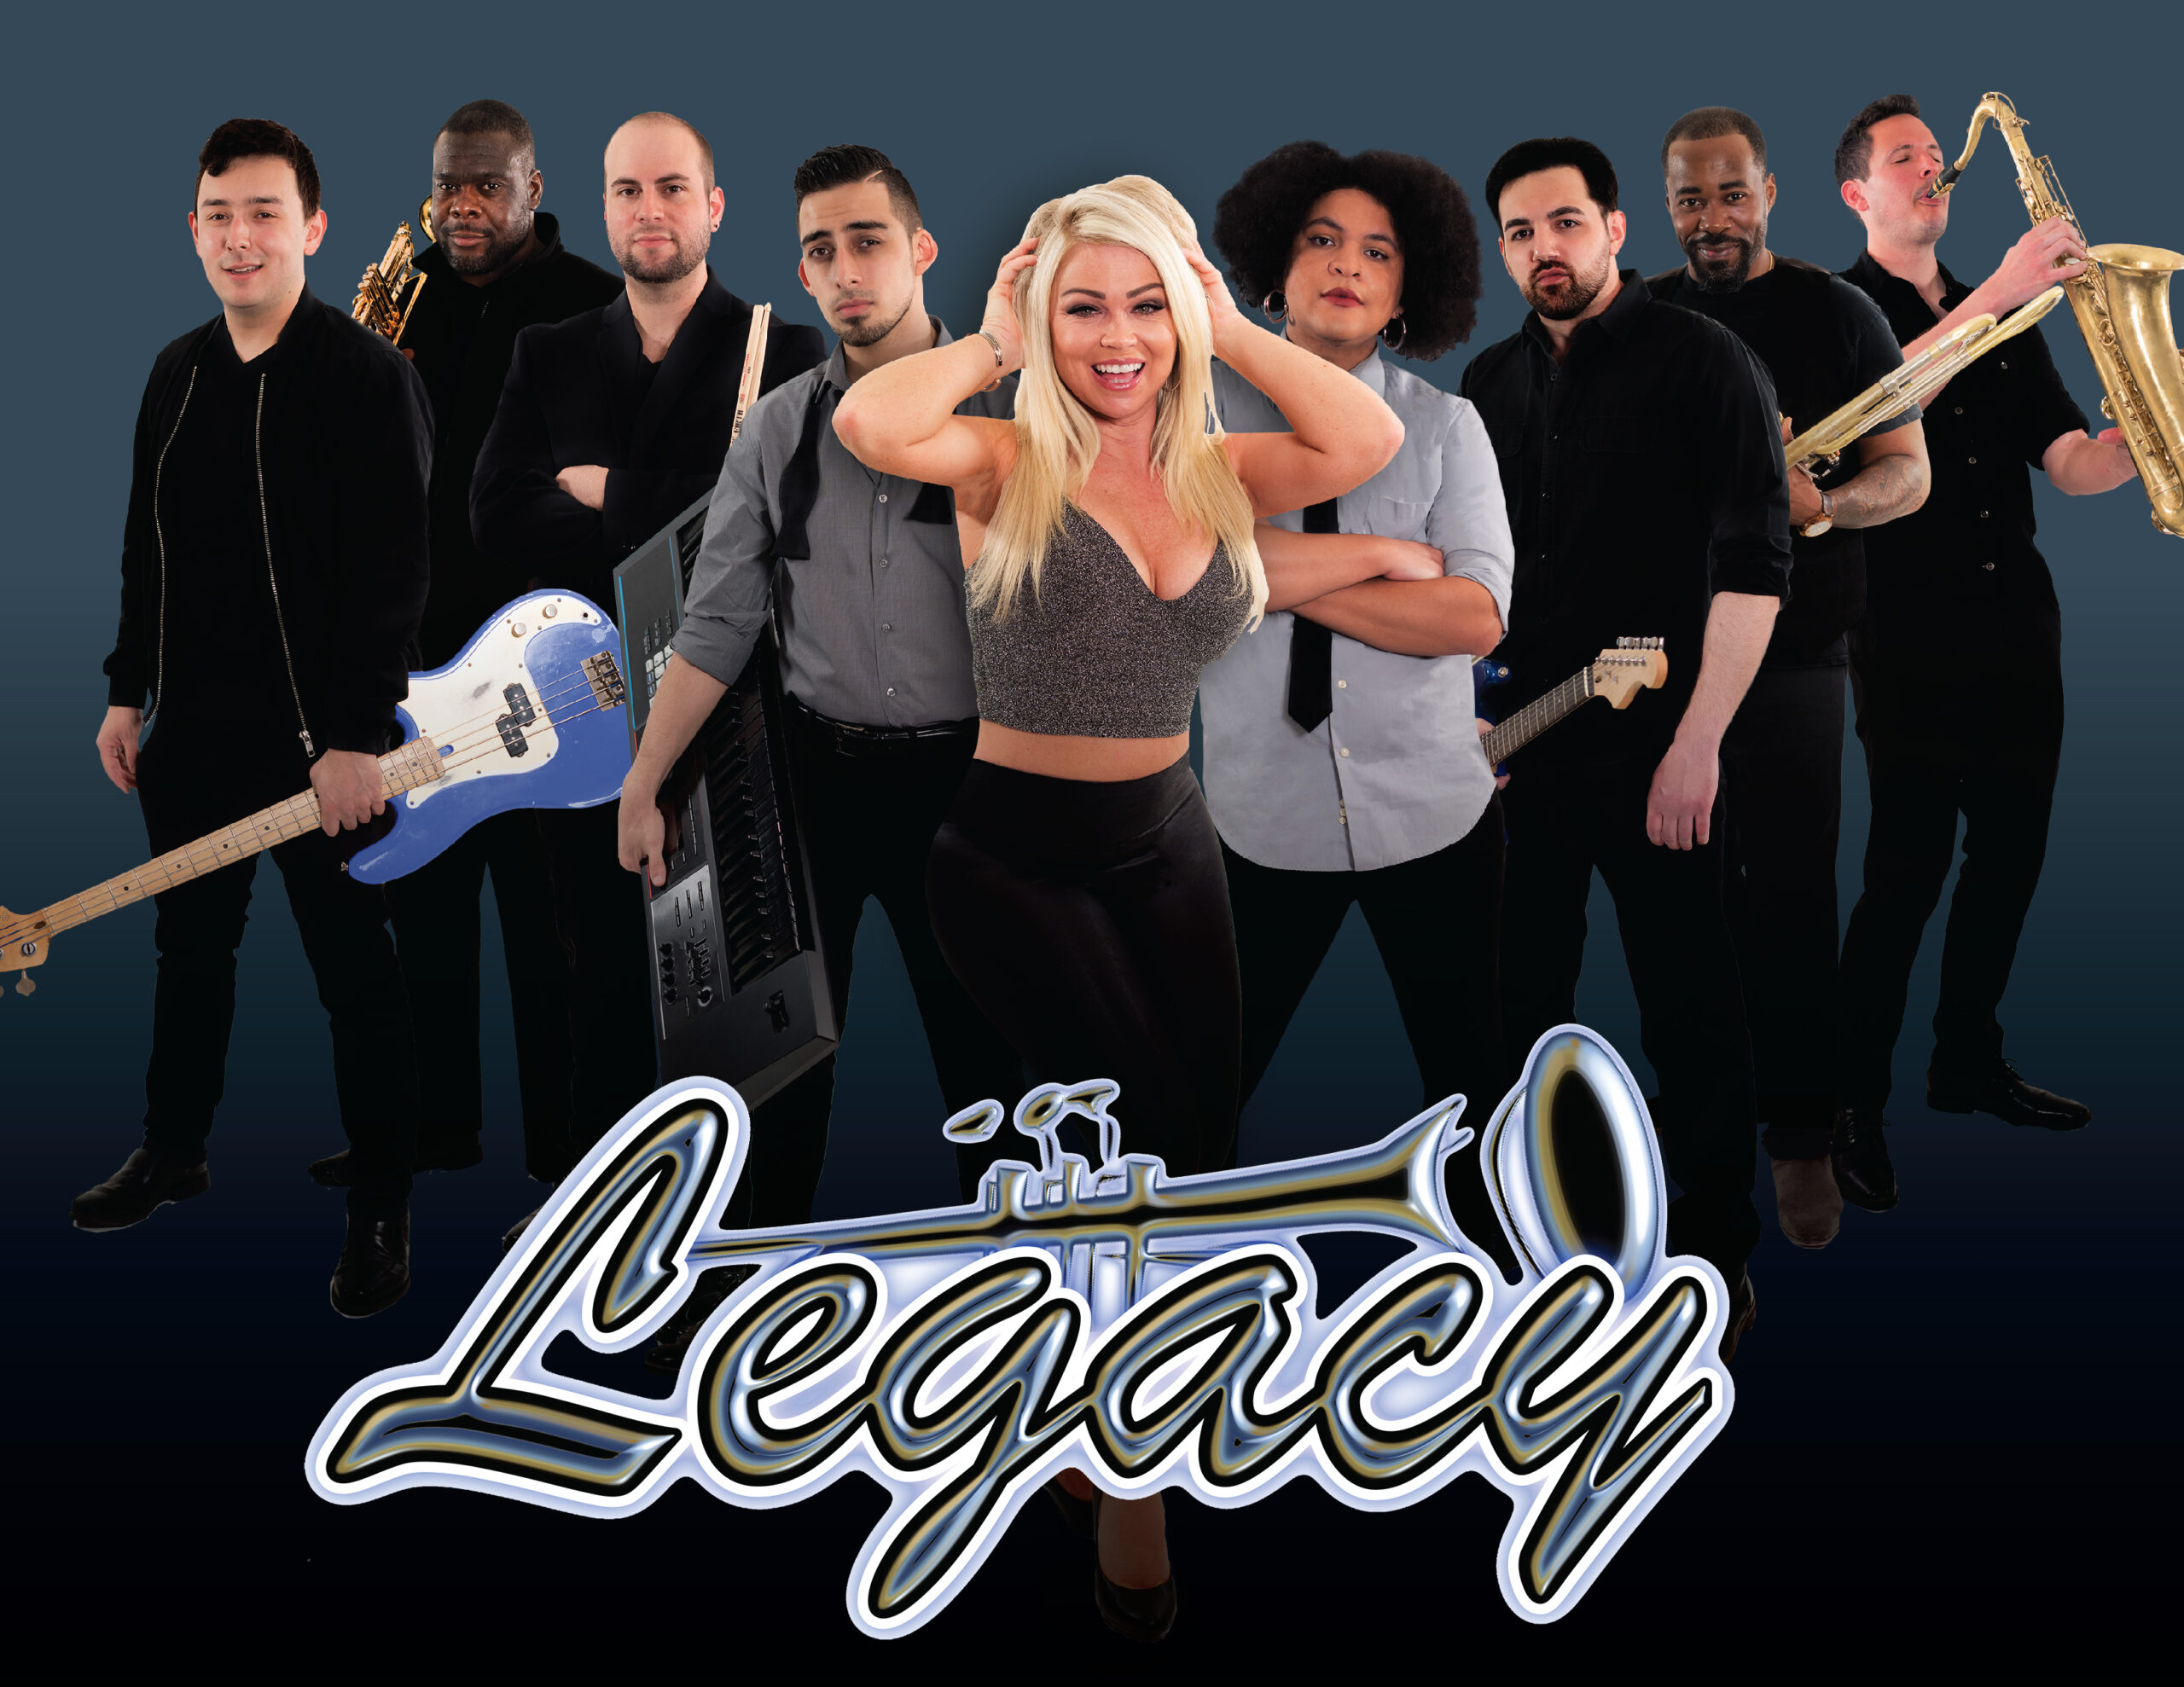 Legacy-flyer-02-01